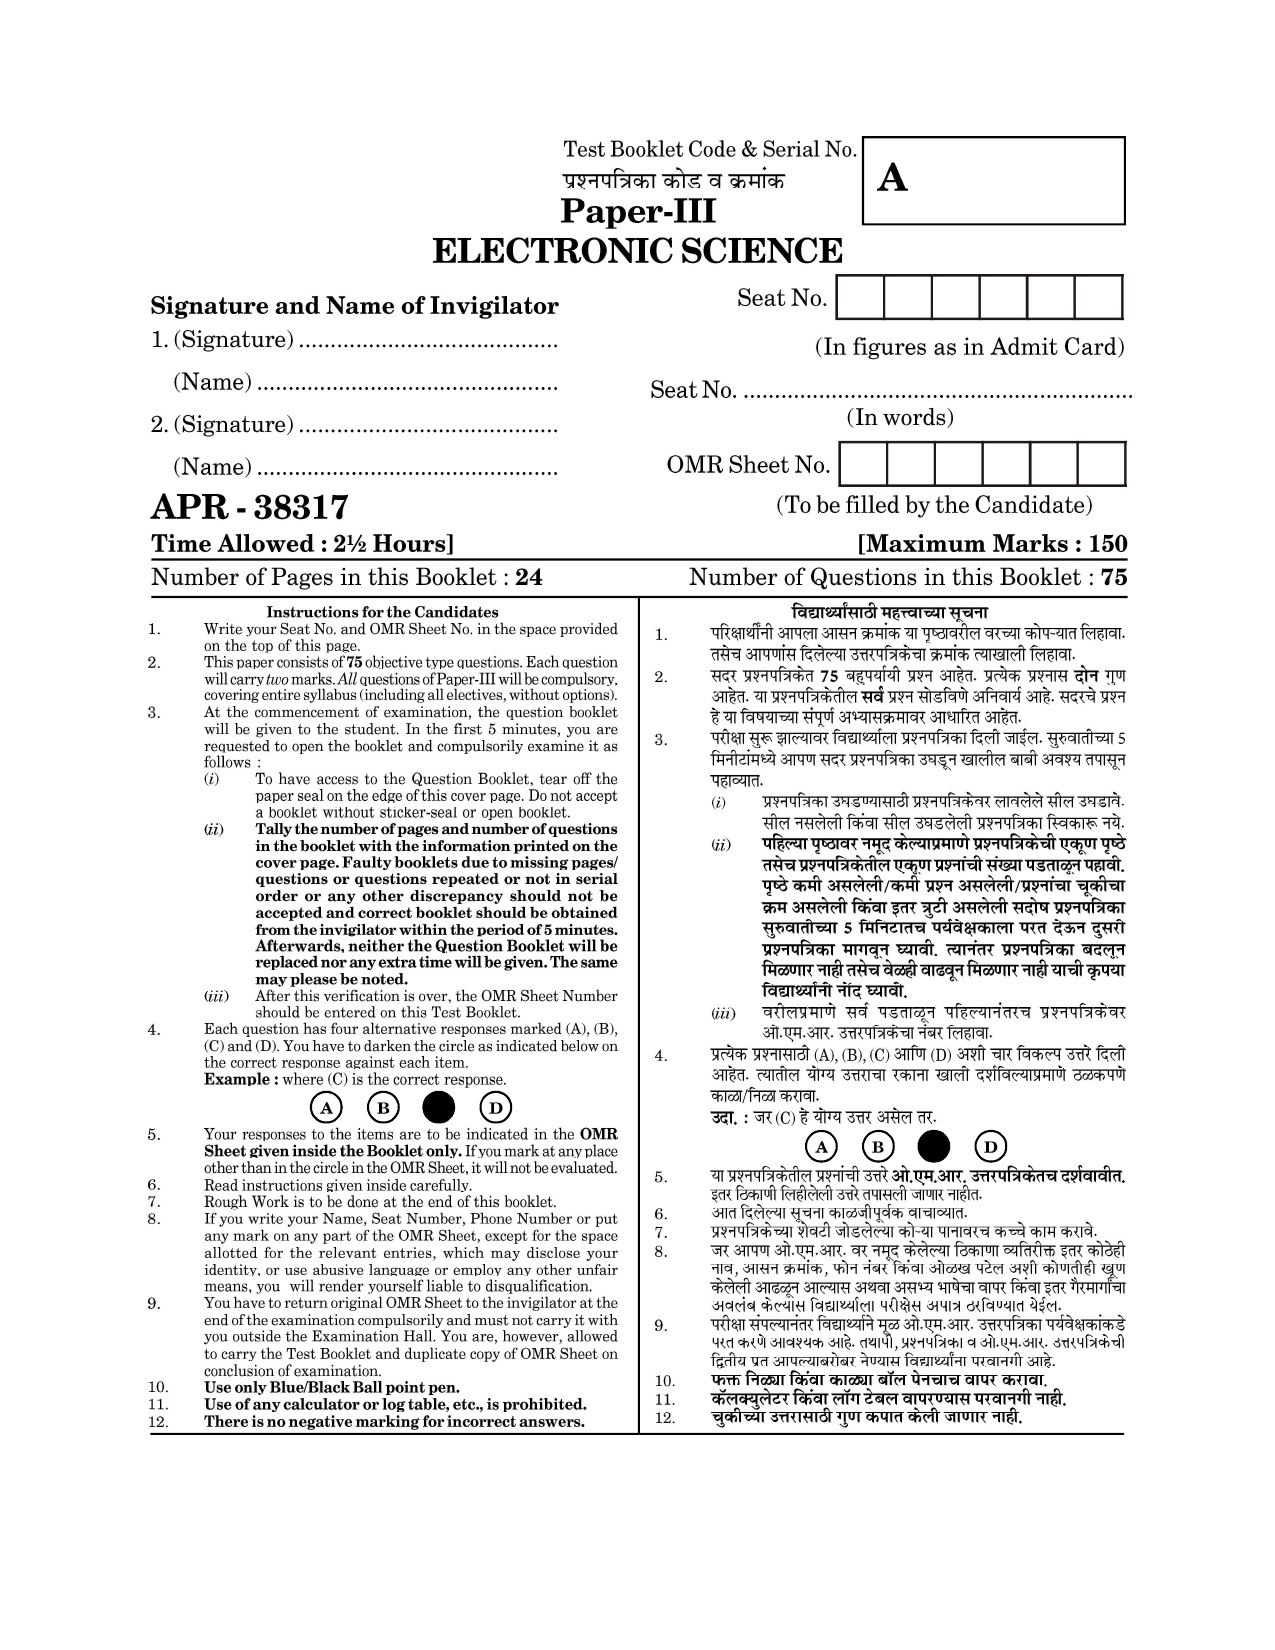 Maharashtra SET Electronics Science Question Paper III April 2017 1